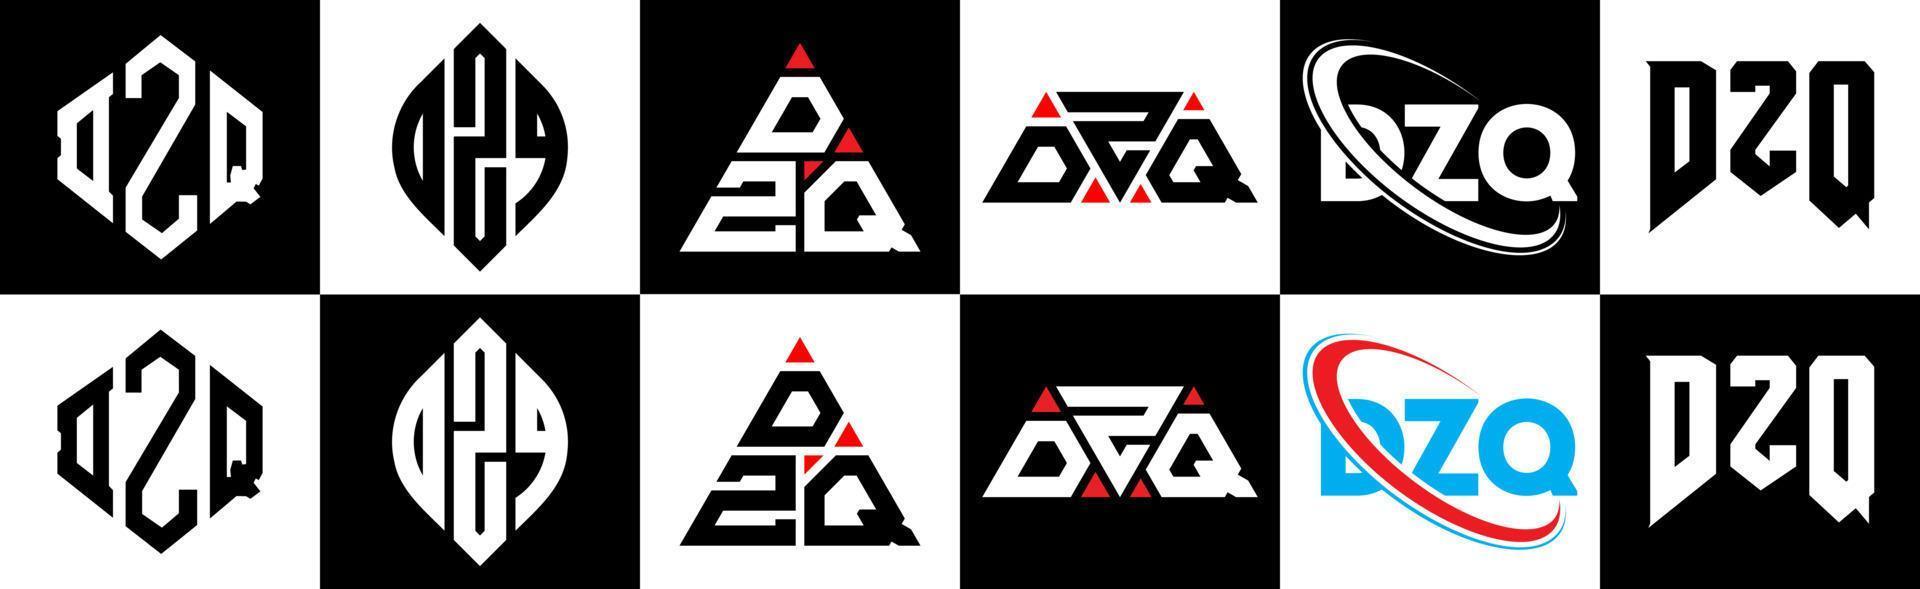 création de logo de lettre dzq en six styles. polygone dzq, cercle, triangle, hexagone, style plat et simple avec logo de lettre de variation de couleur noir et blanc dans un plan de travail. dzq logo minimaliste et classique vecteur